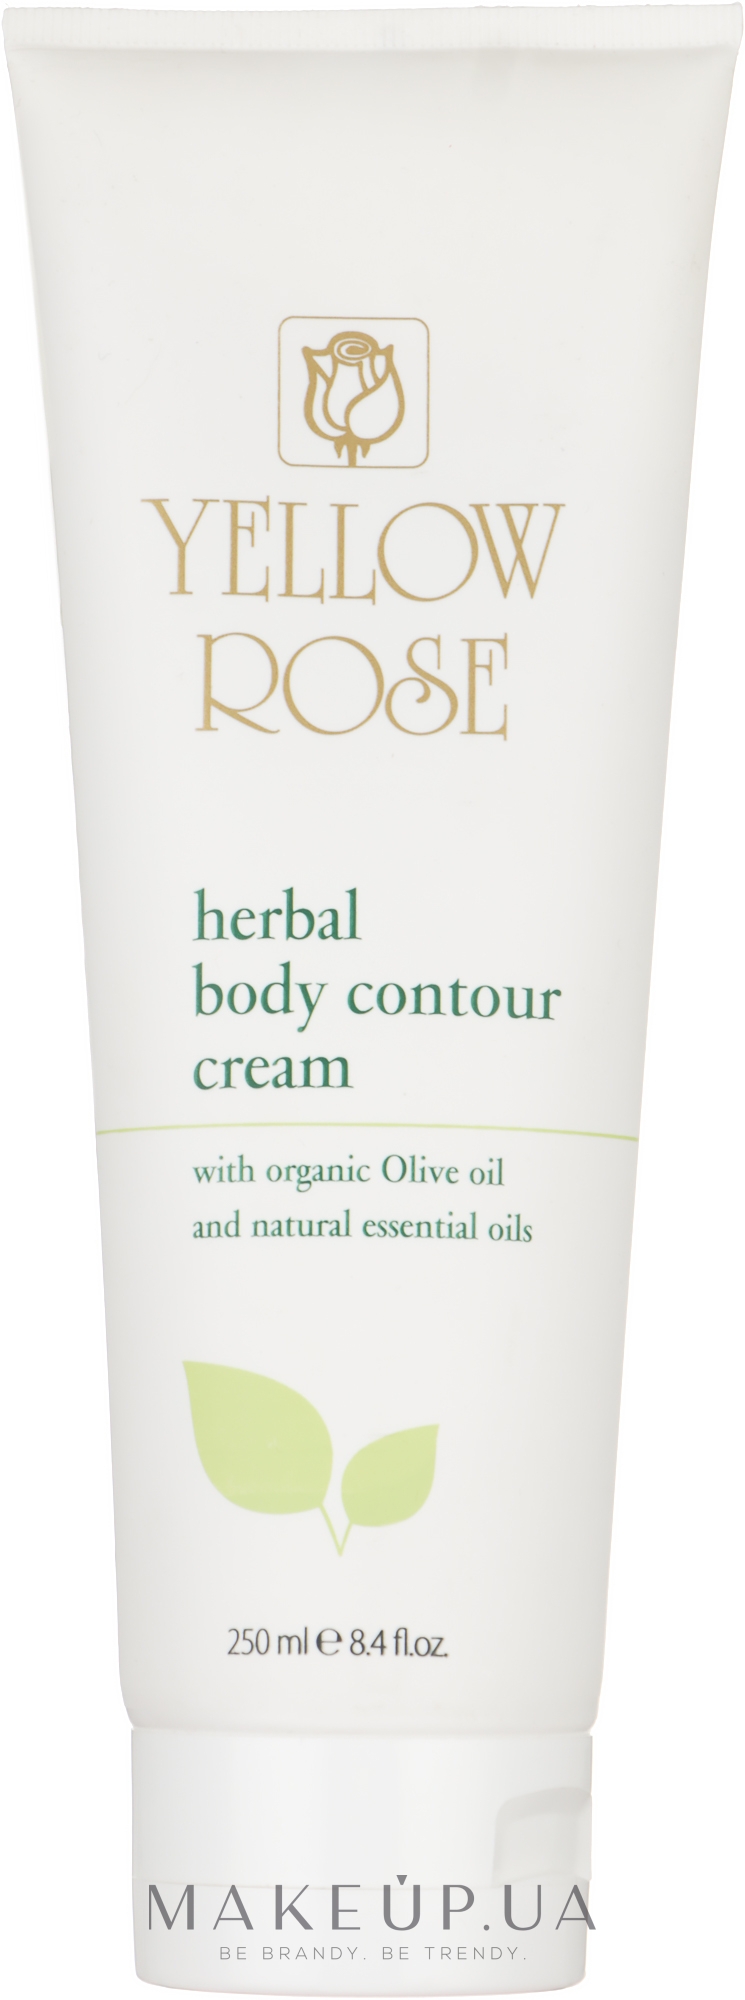 Трав'яний крем для тіла - Yellow Rose Herbal Body Contour Cream — фото 250ml